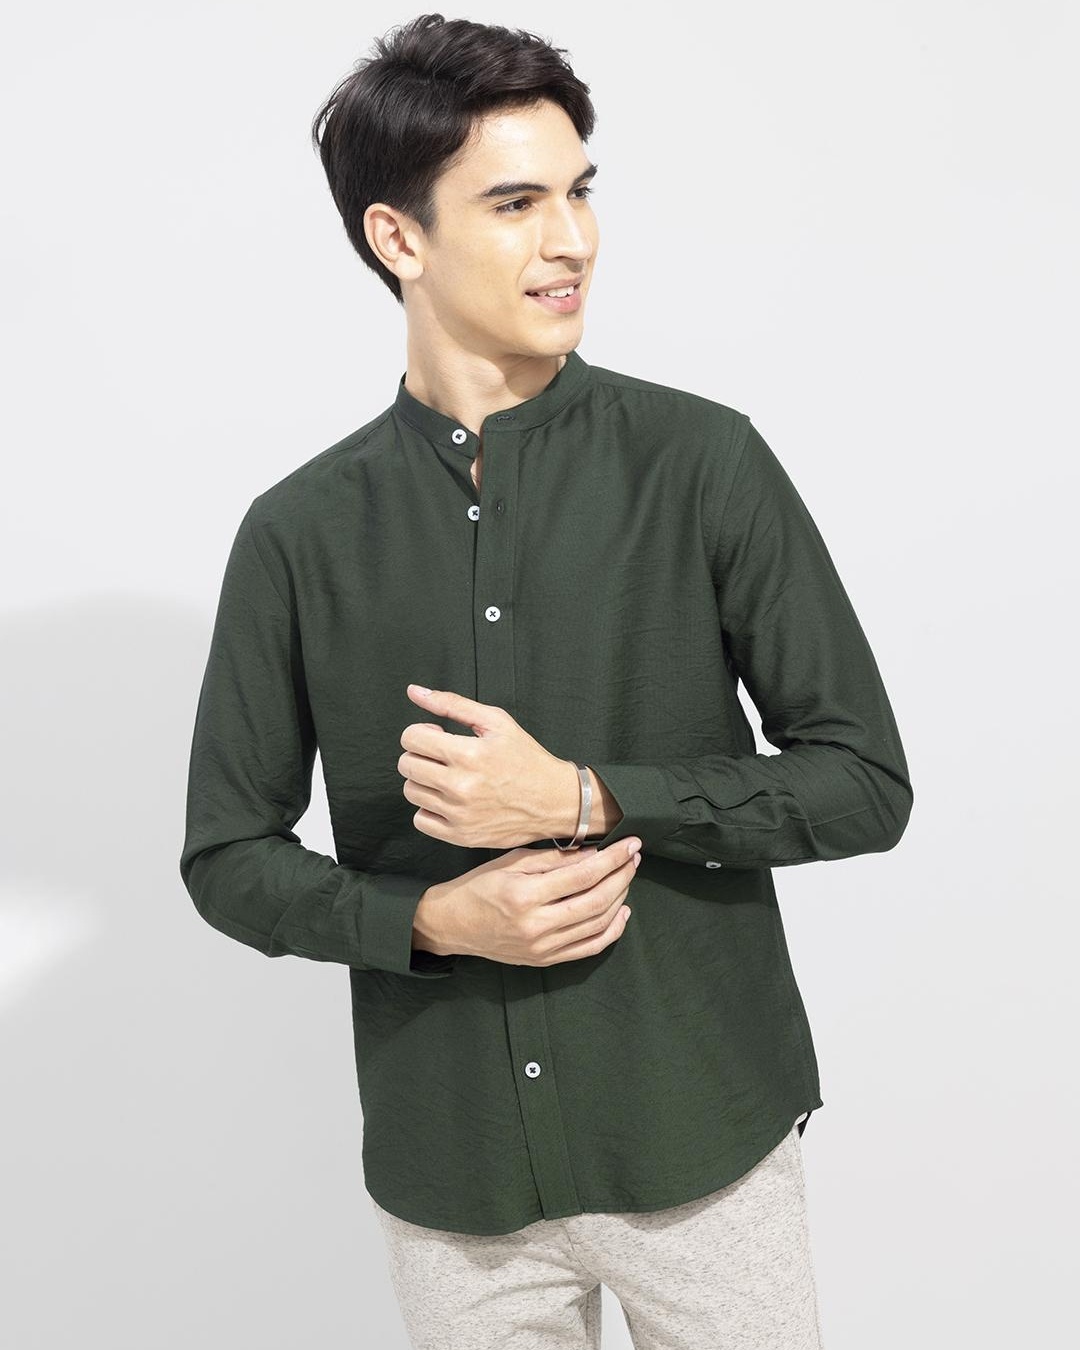 Buy Men's Green Slim Fit Shirt for Men Green Online at Bewakoof